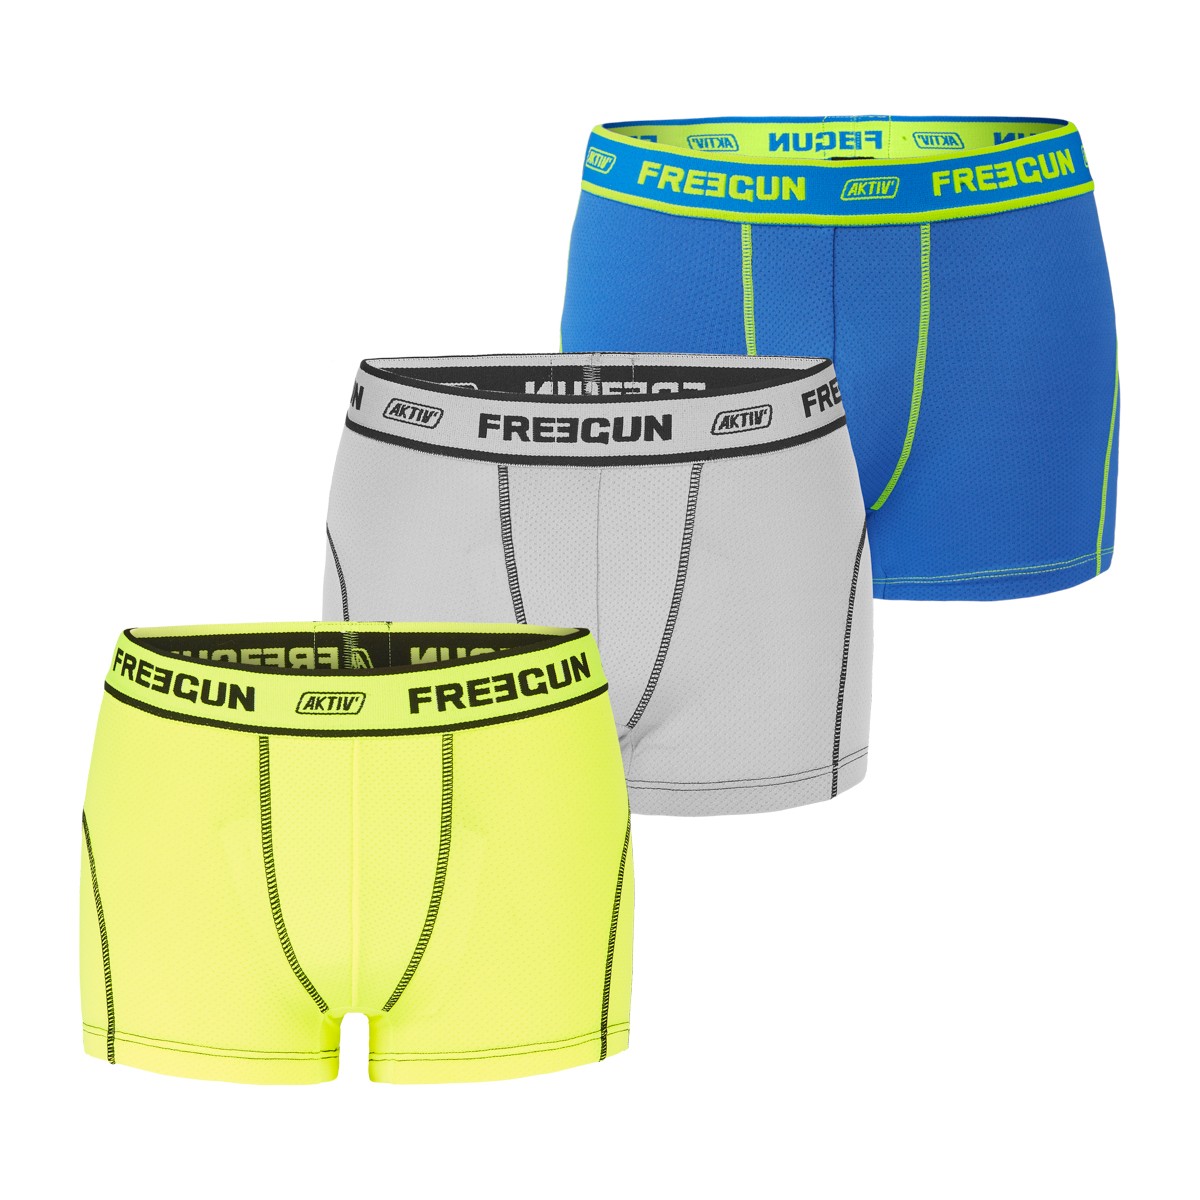 Set of 3 Boy's Boxers Uni Multicolored Résultats page pour - Freegun